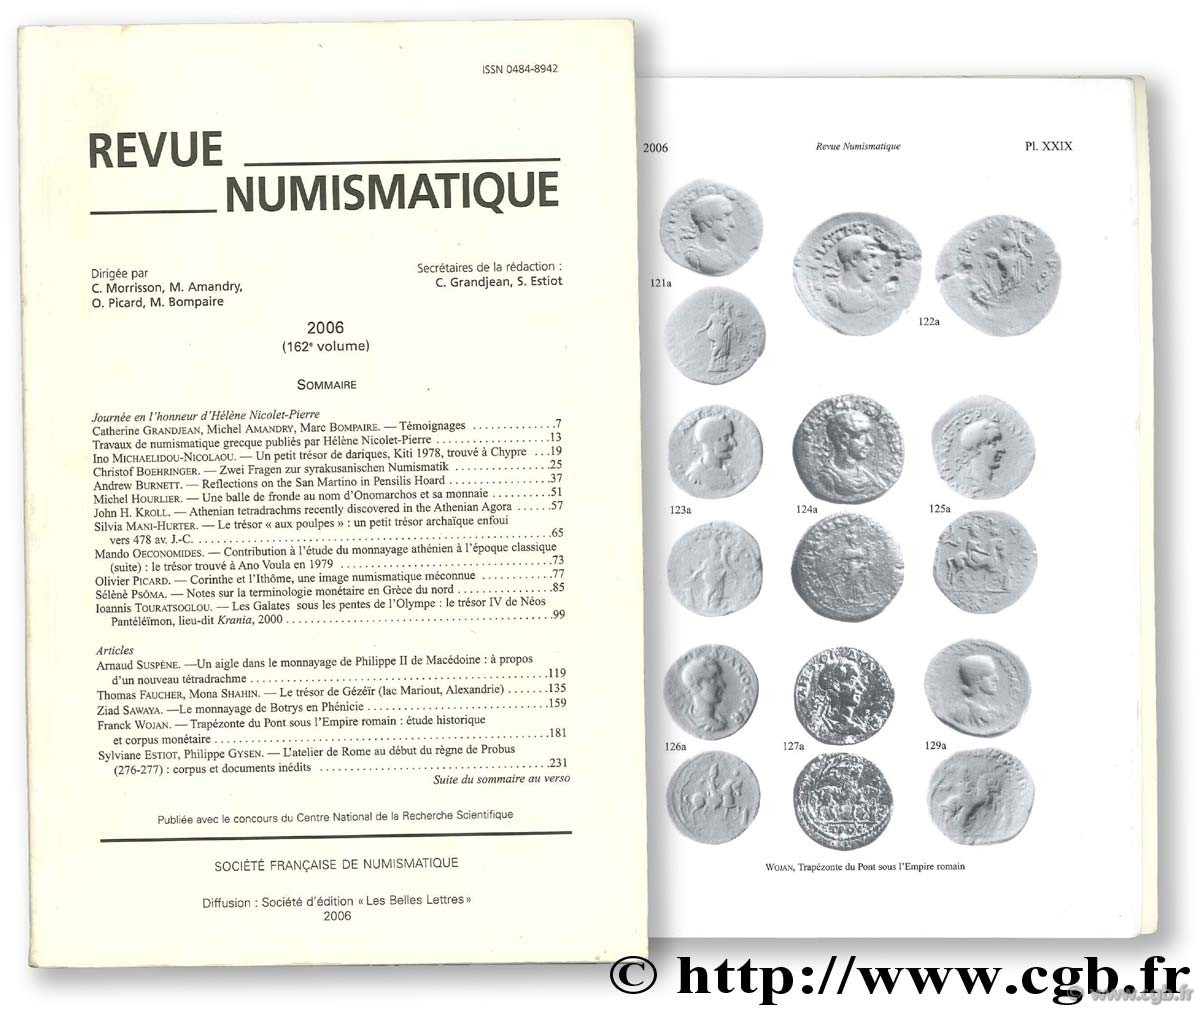 Revue Numismatique, 162ème volume BOMPAIRE M., ESTIOT S.